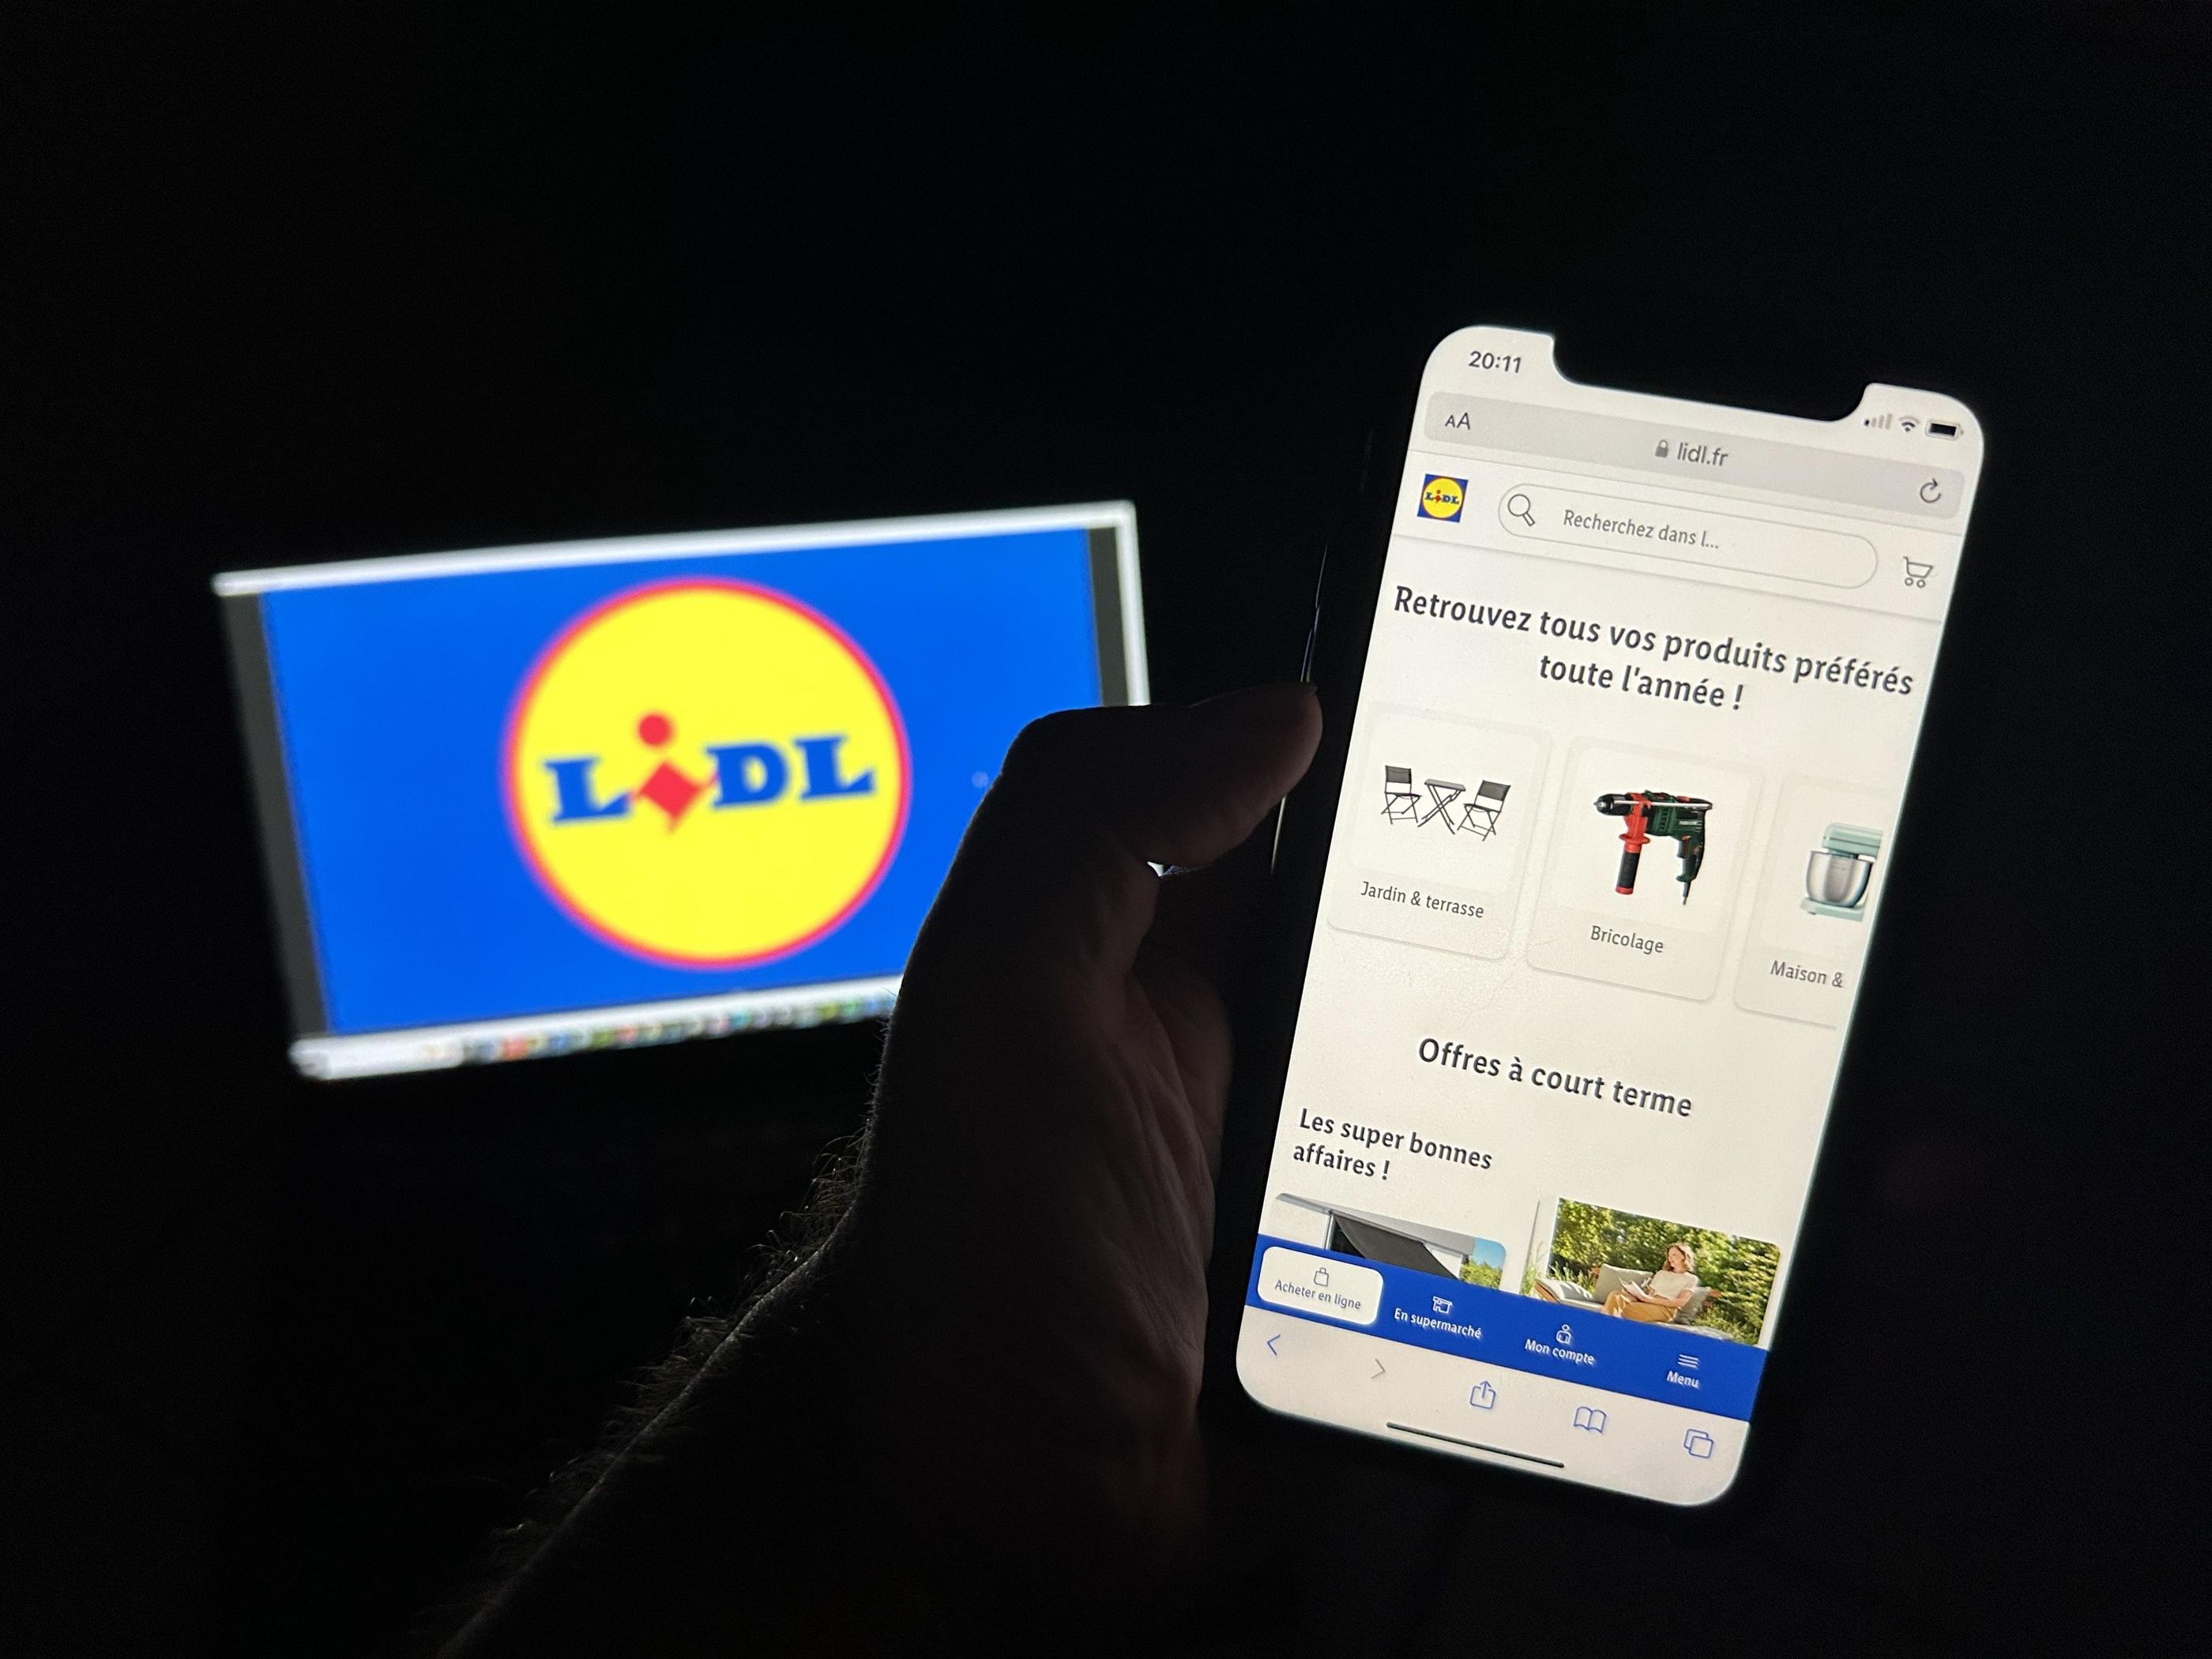 Sur le site Lidl.fr comme sur l'appli, les consommateurs pourront retrouver les objets à petits prix qui font le succès de la marque. (Illustration) LP